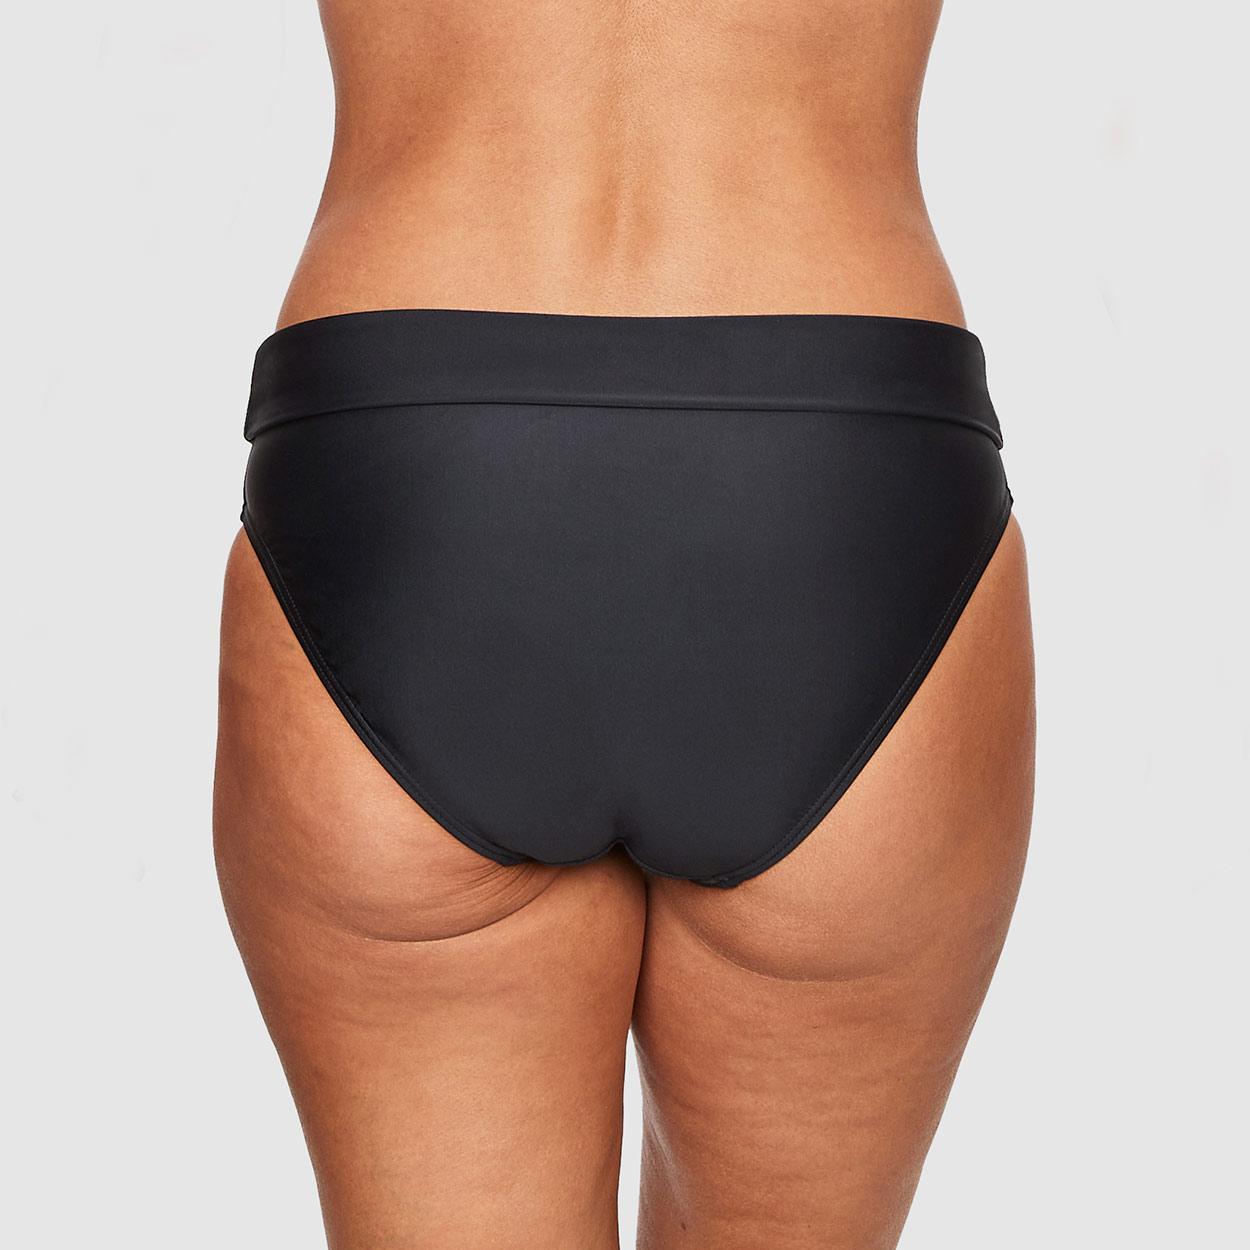 Abecitas Bikini-Faltslip Modell Capri Delight in Farbe schwarz in der Rückansicht